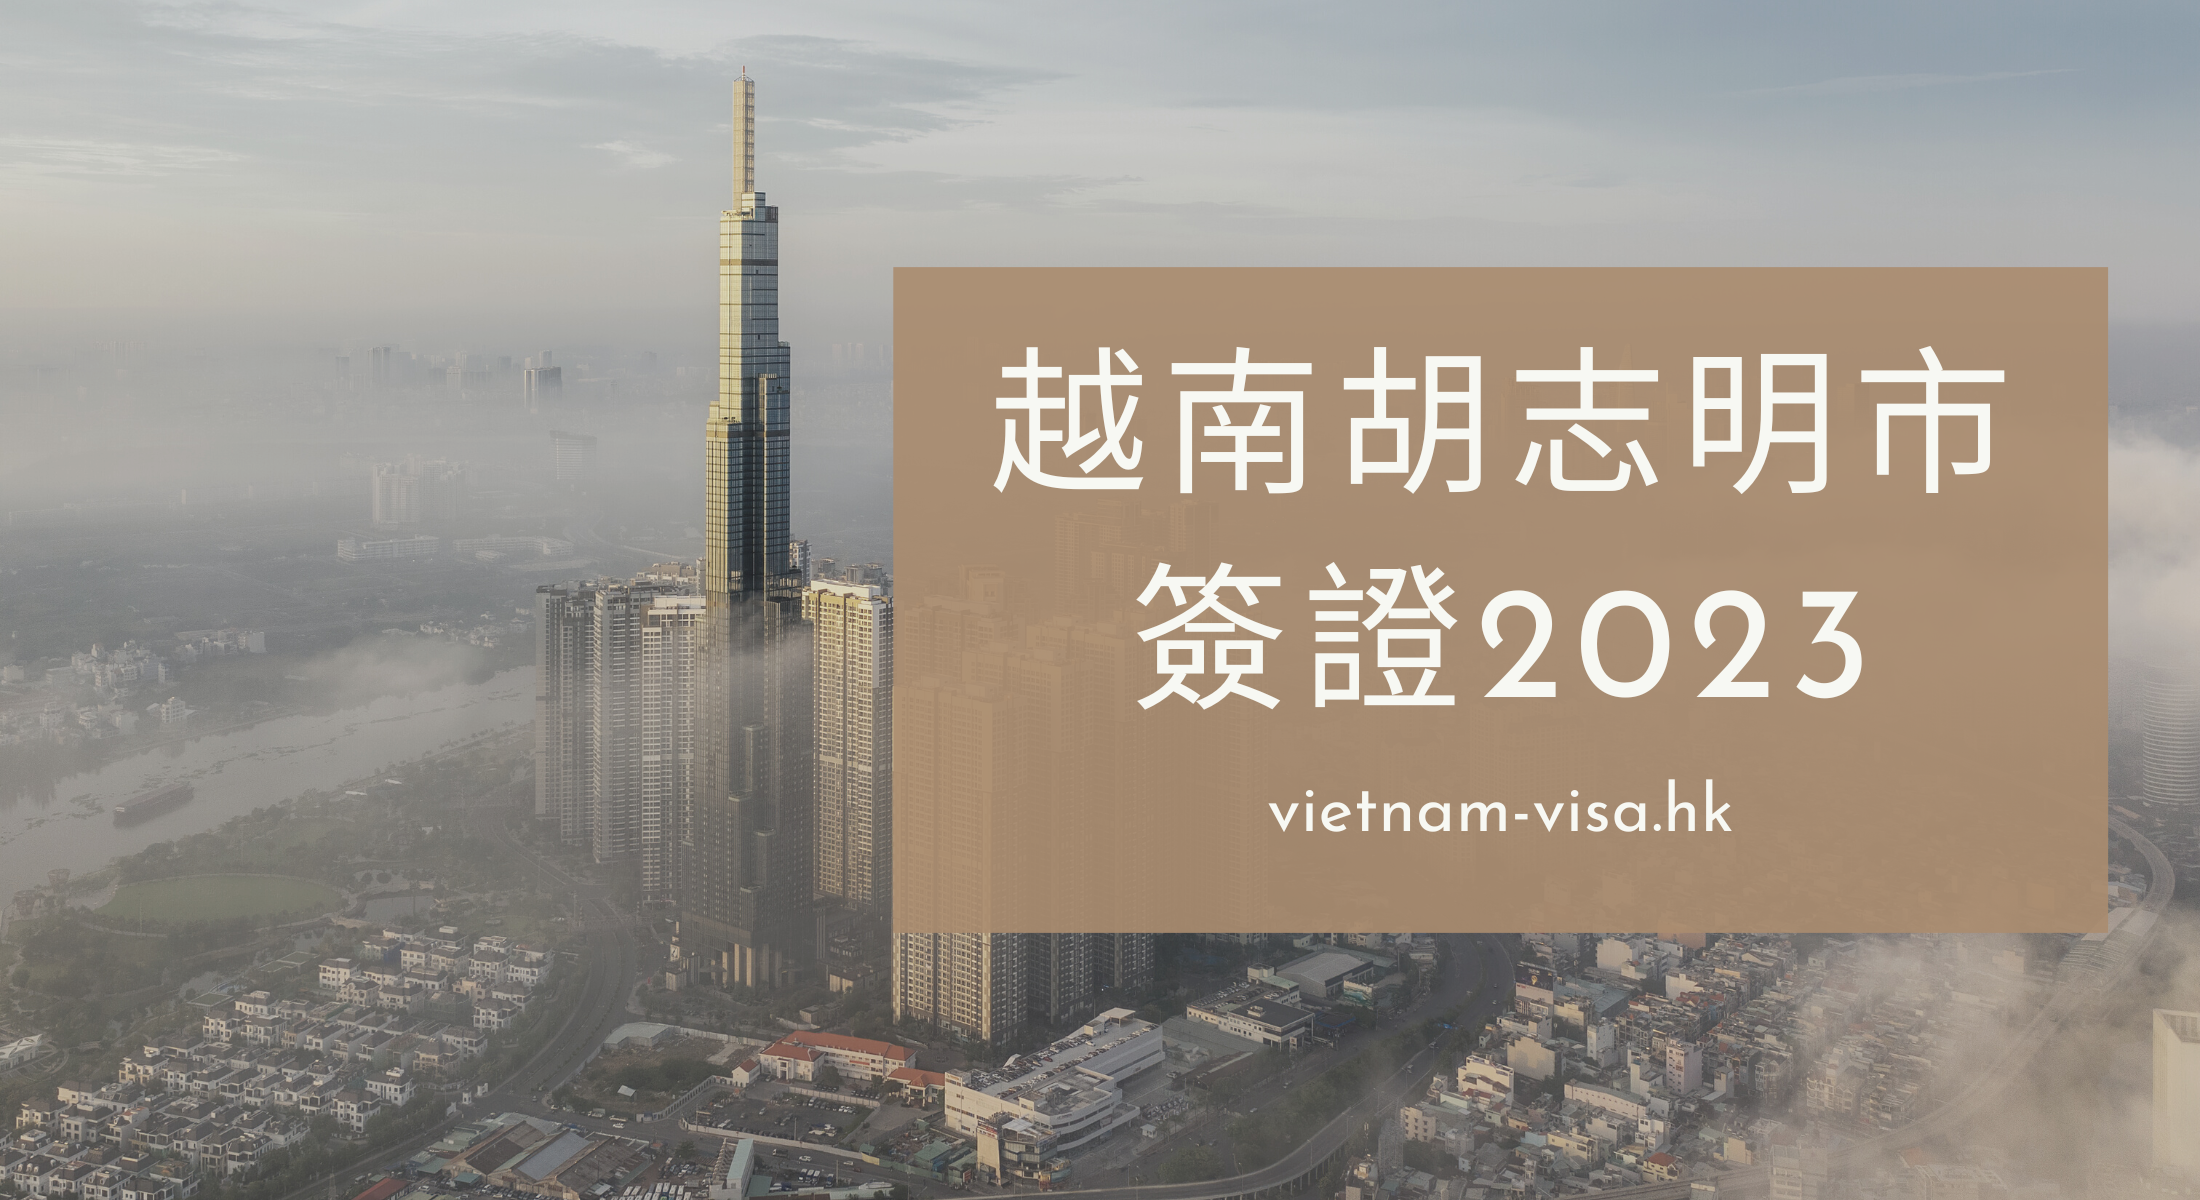 2024 申請越南胡志明簽證的指南 -胡志明旅遊必知